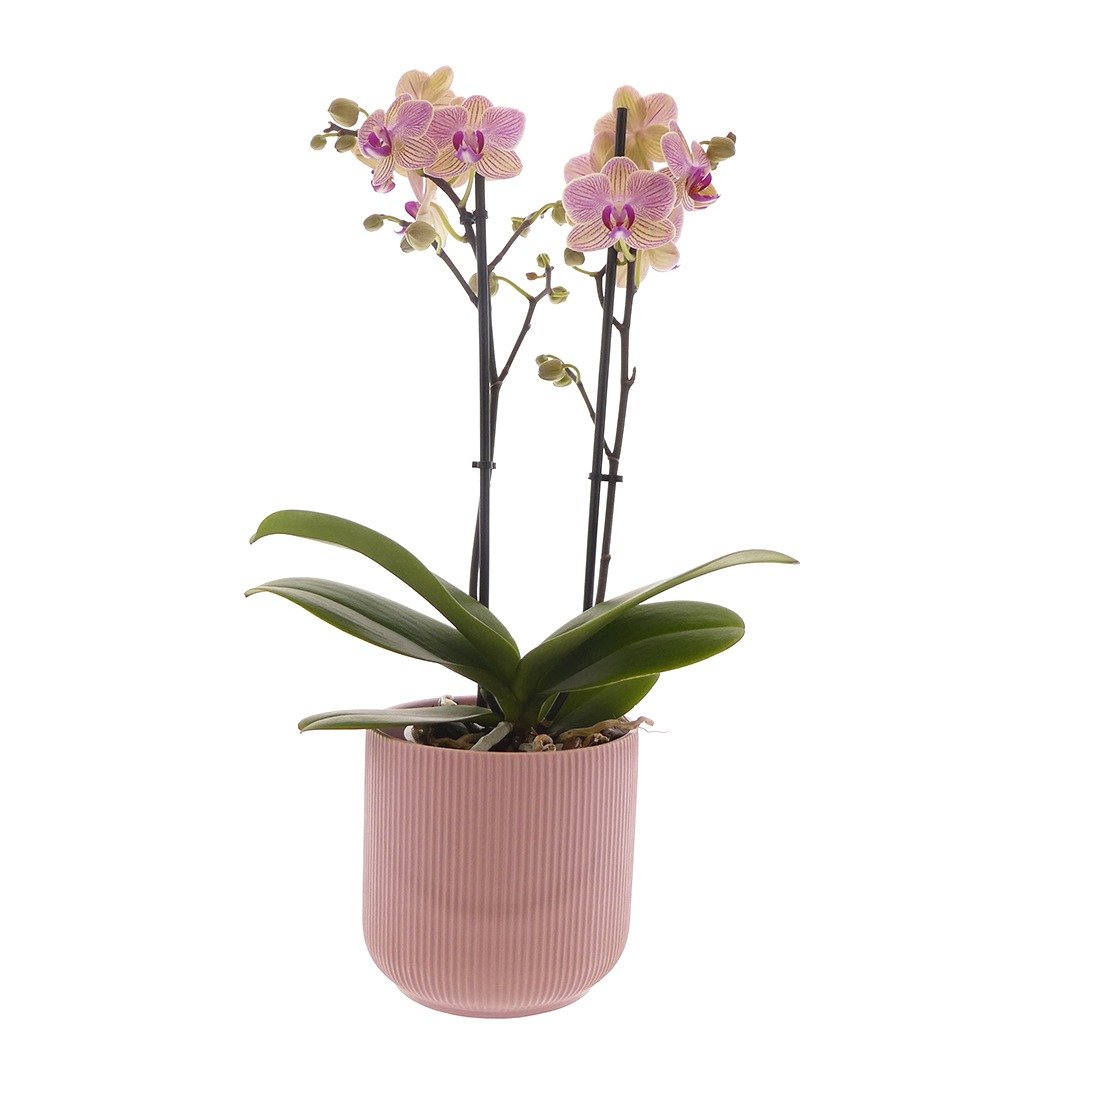 Productfotografie fotostudio planten en bloemen orchidee